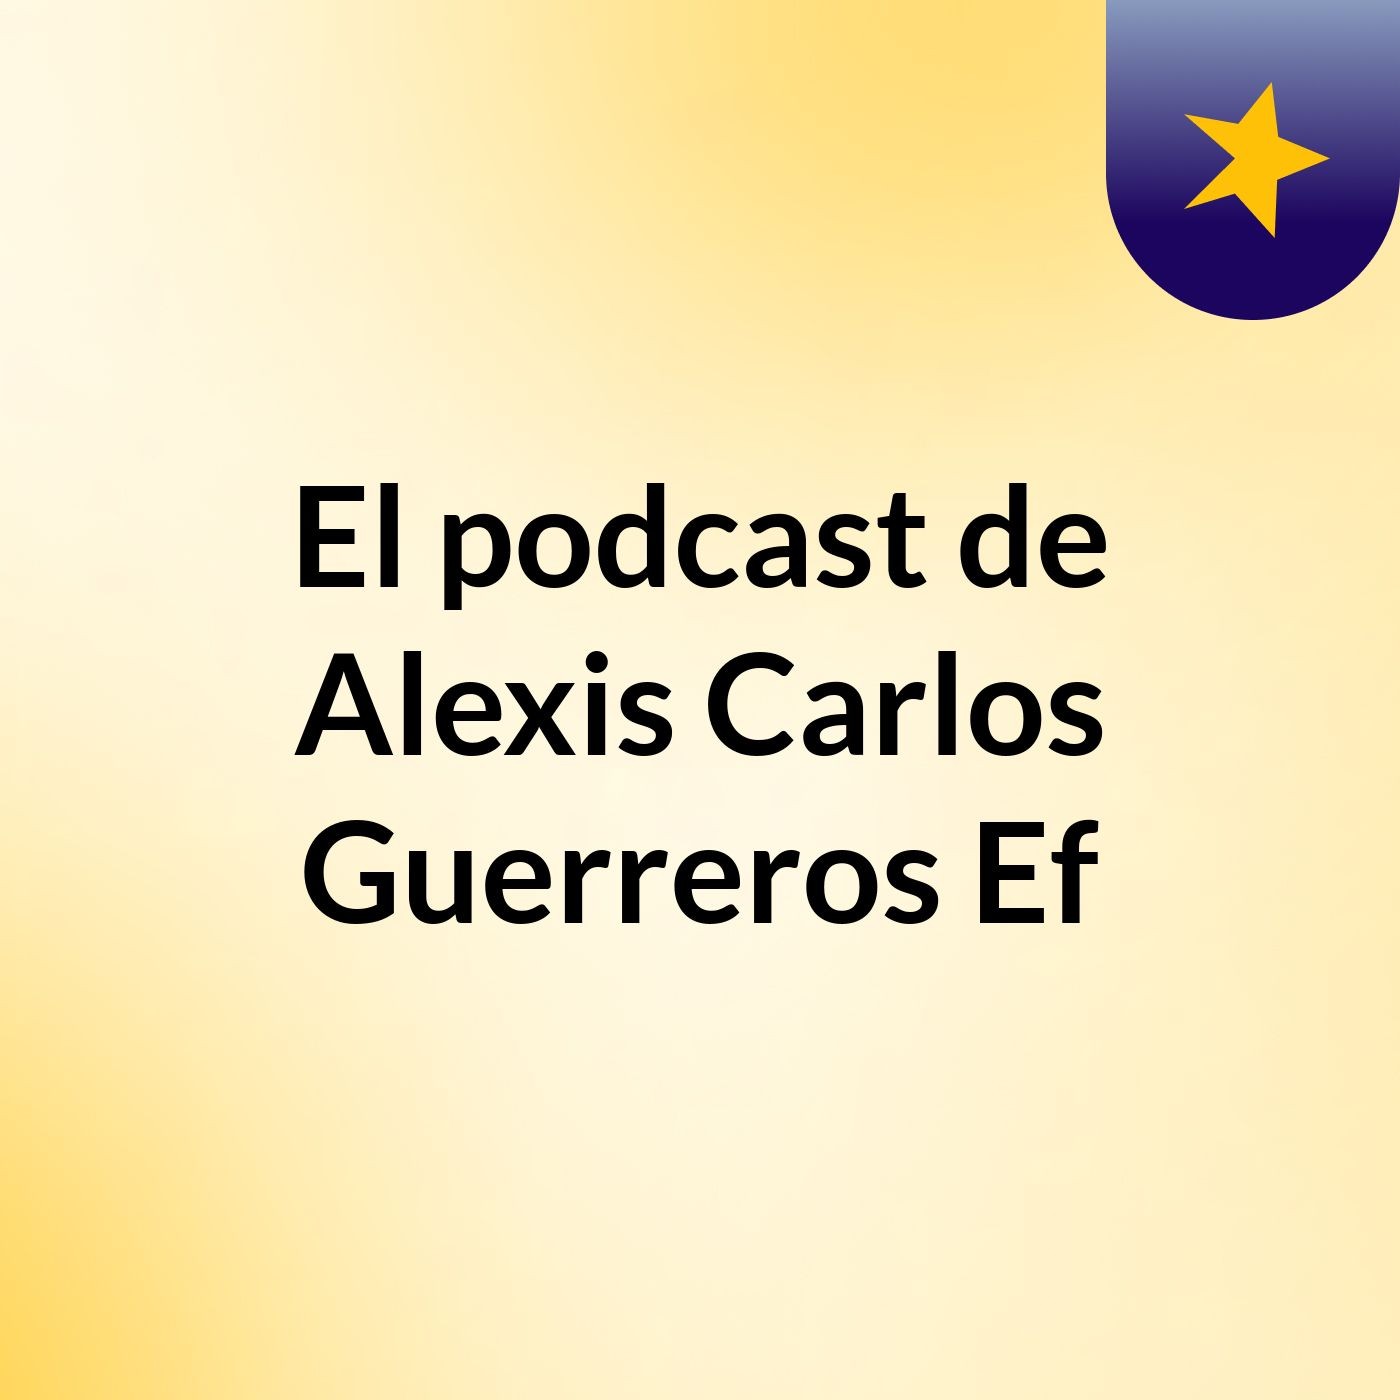 El podcast de Alexis Carlos Guerreros Ef